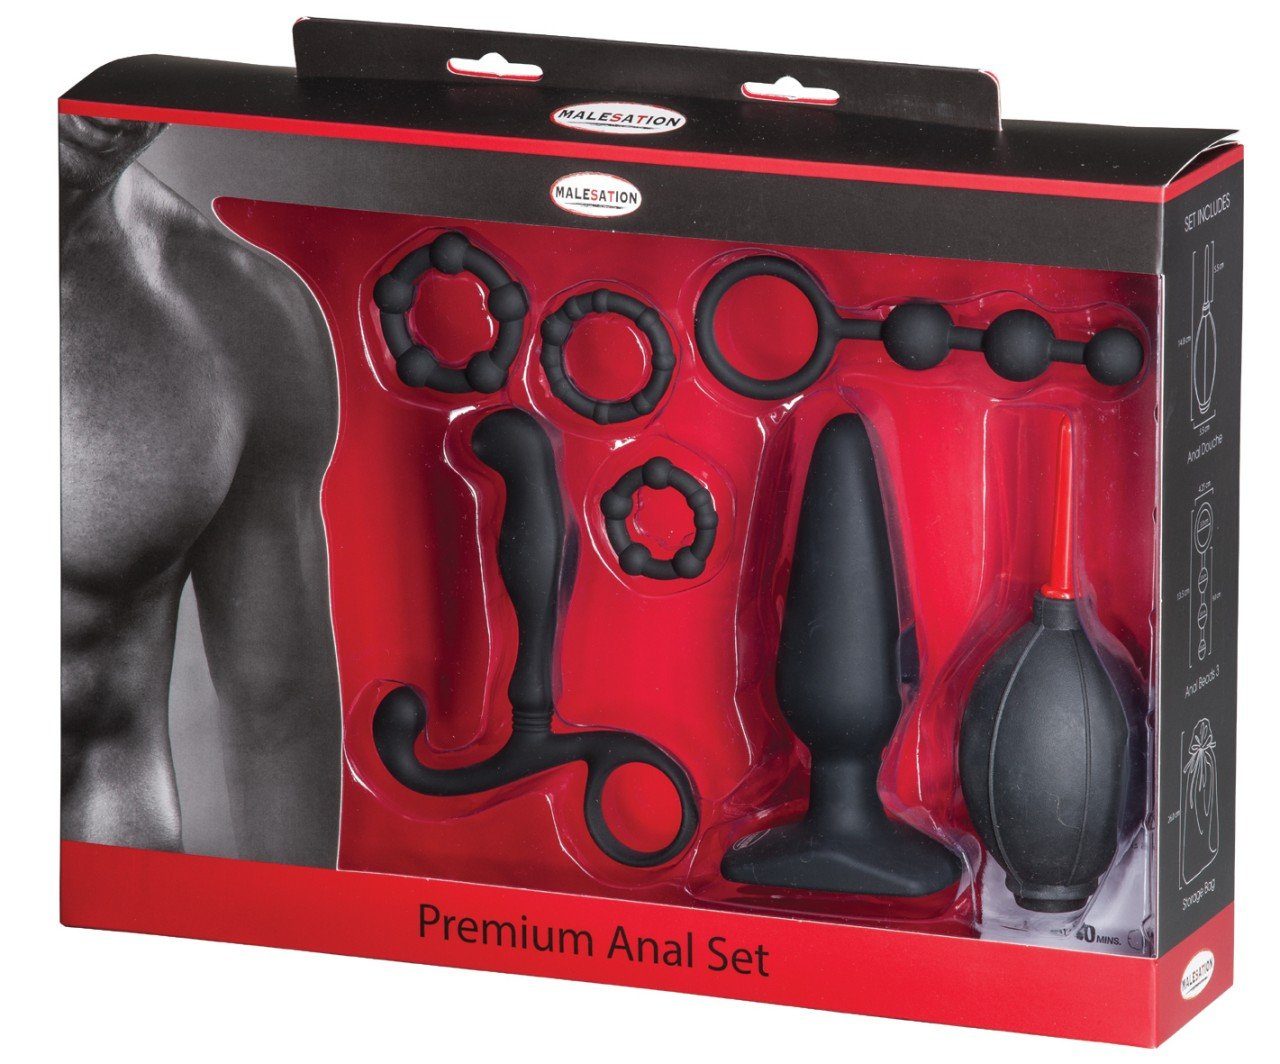 Malesation Erotik-Toy-Set MALESATION Premium Anal Set